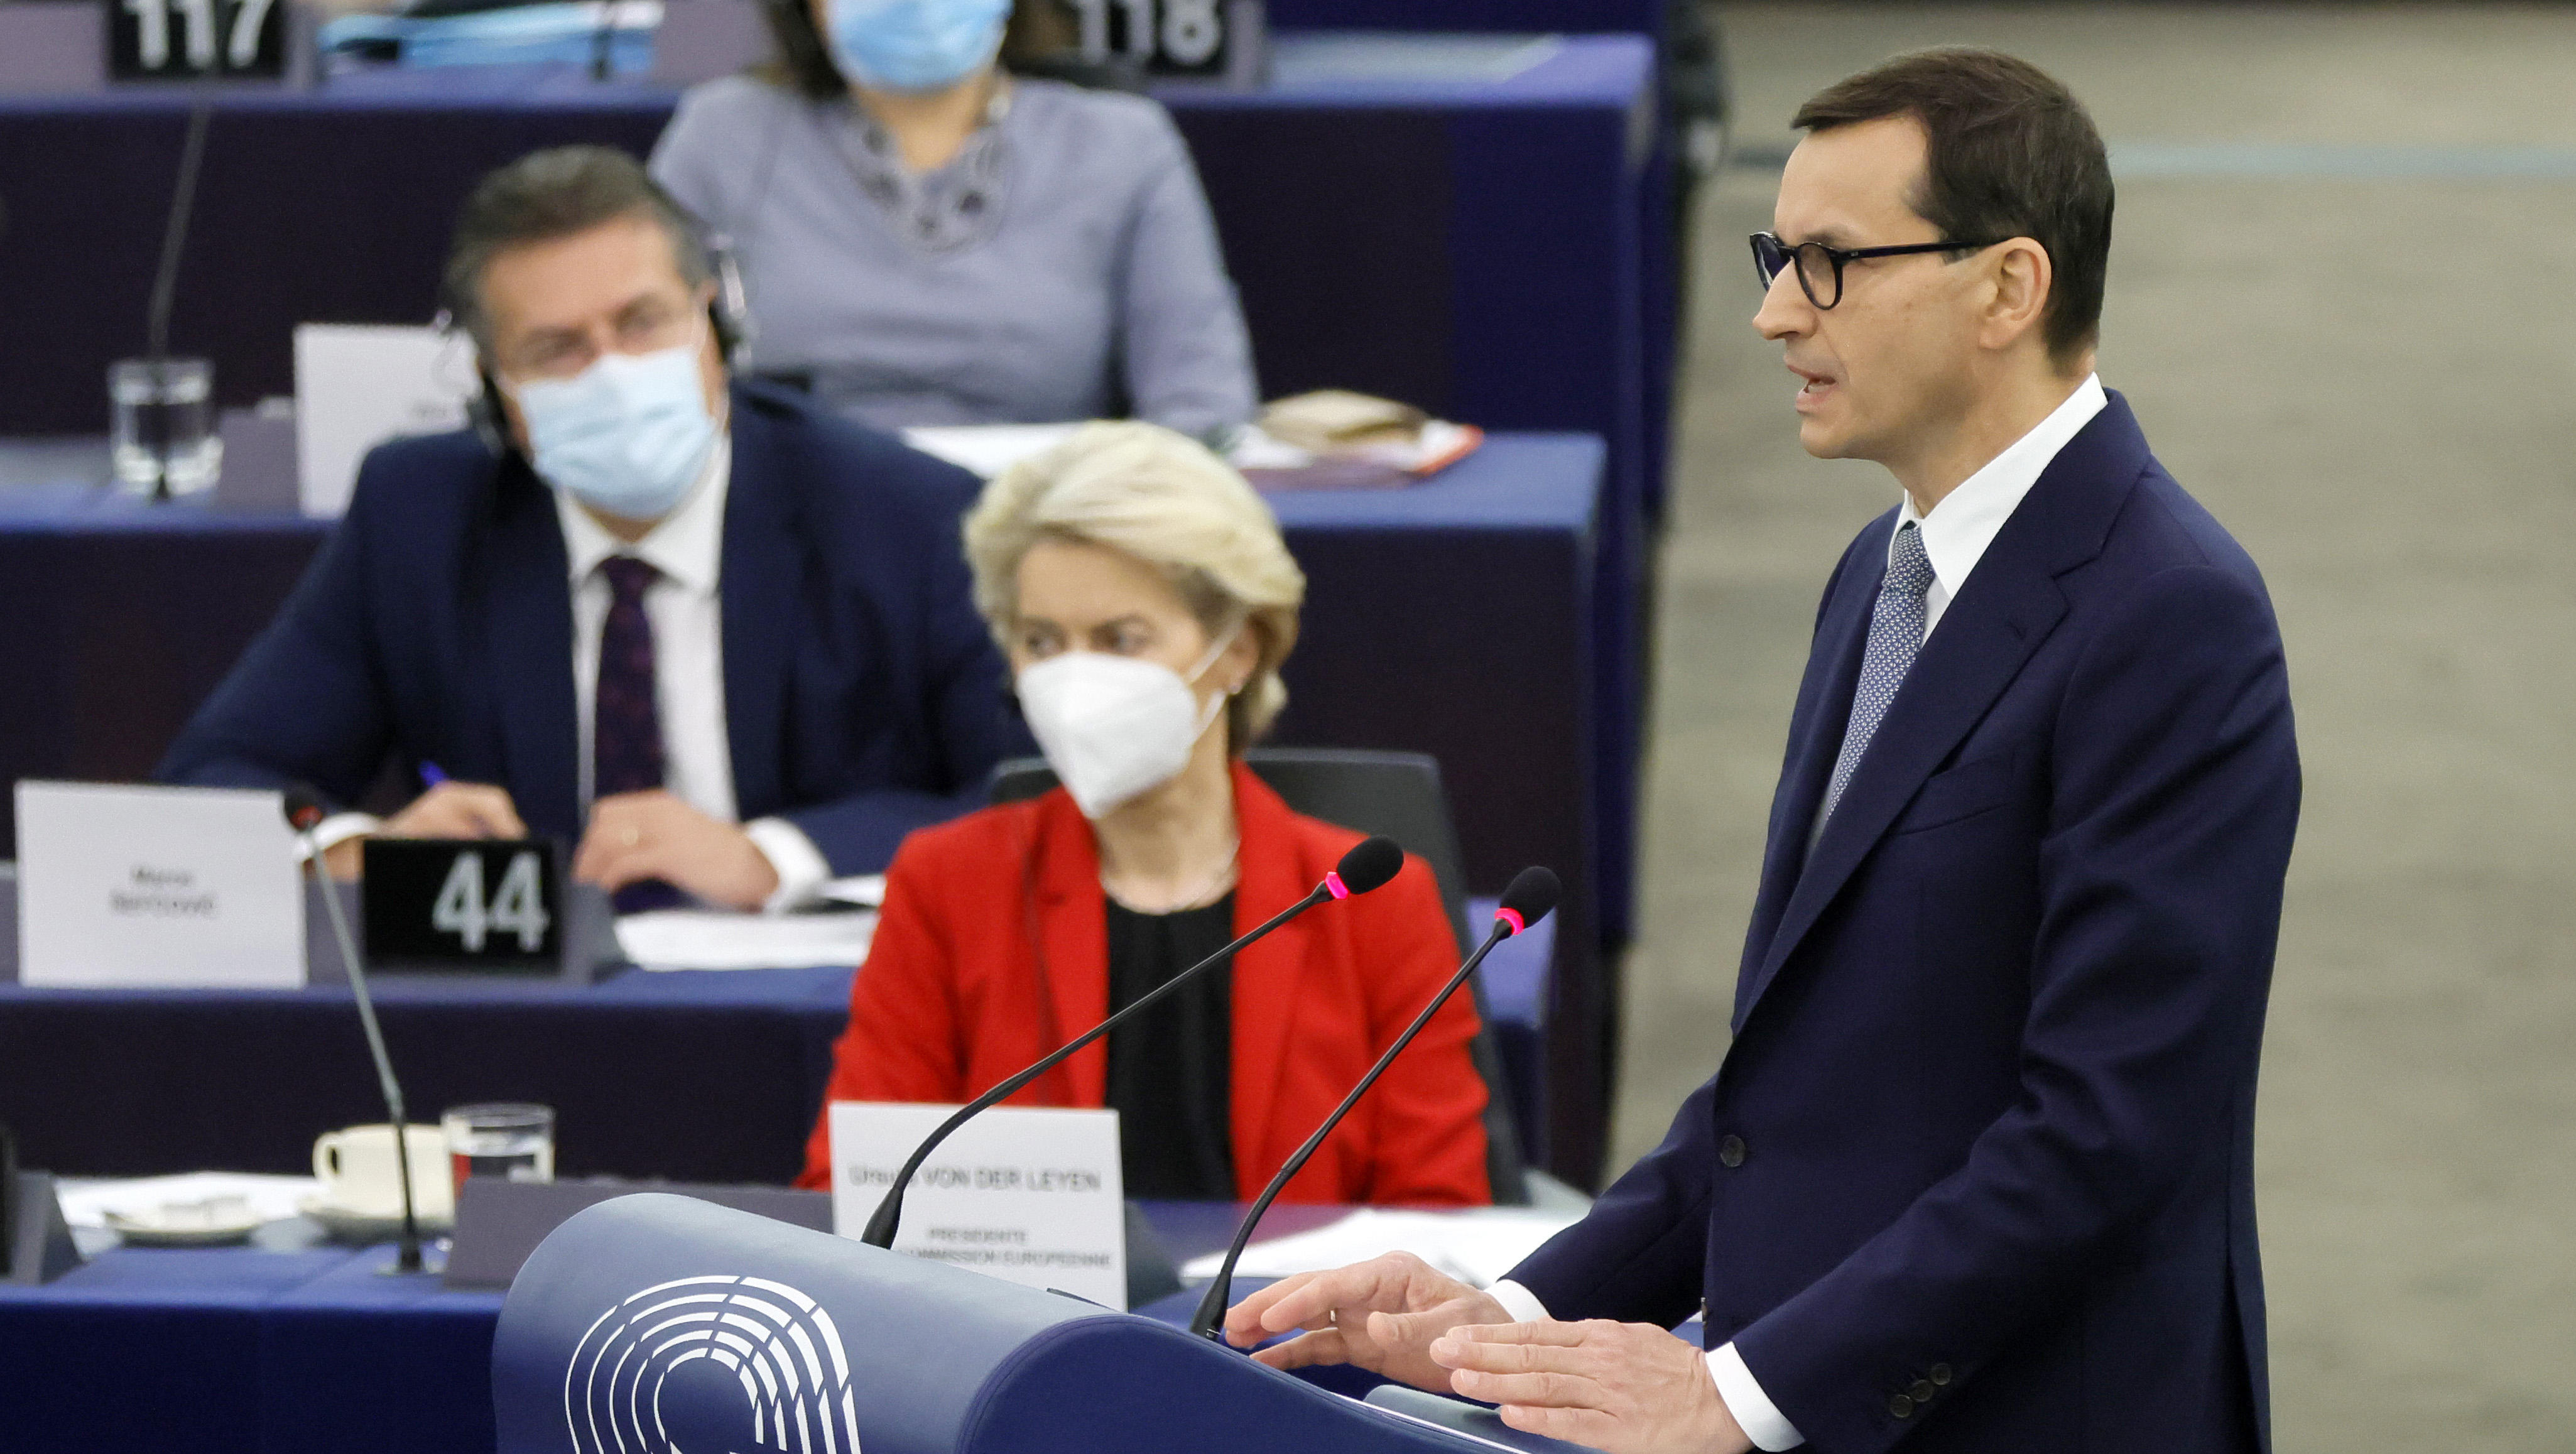 Polen an EU-Kommission: Wir lassen uns nicht erpressen